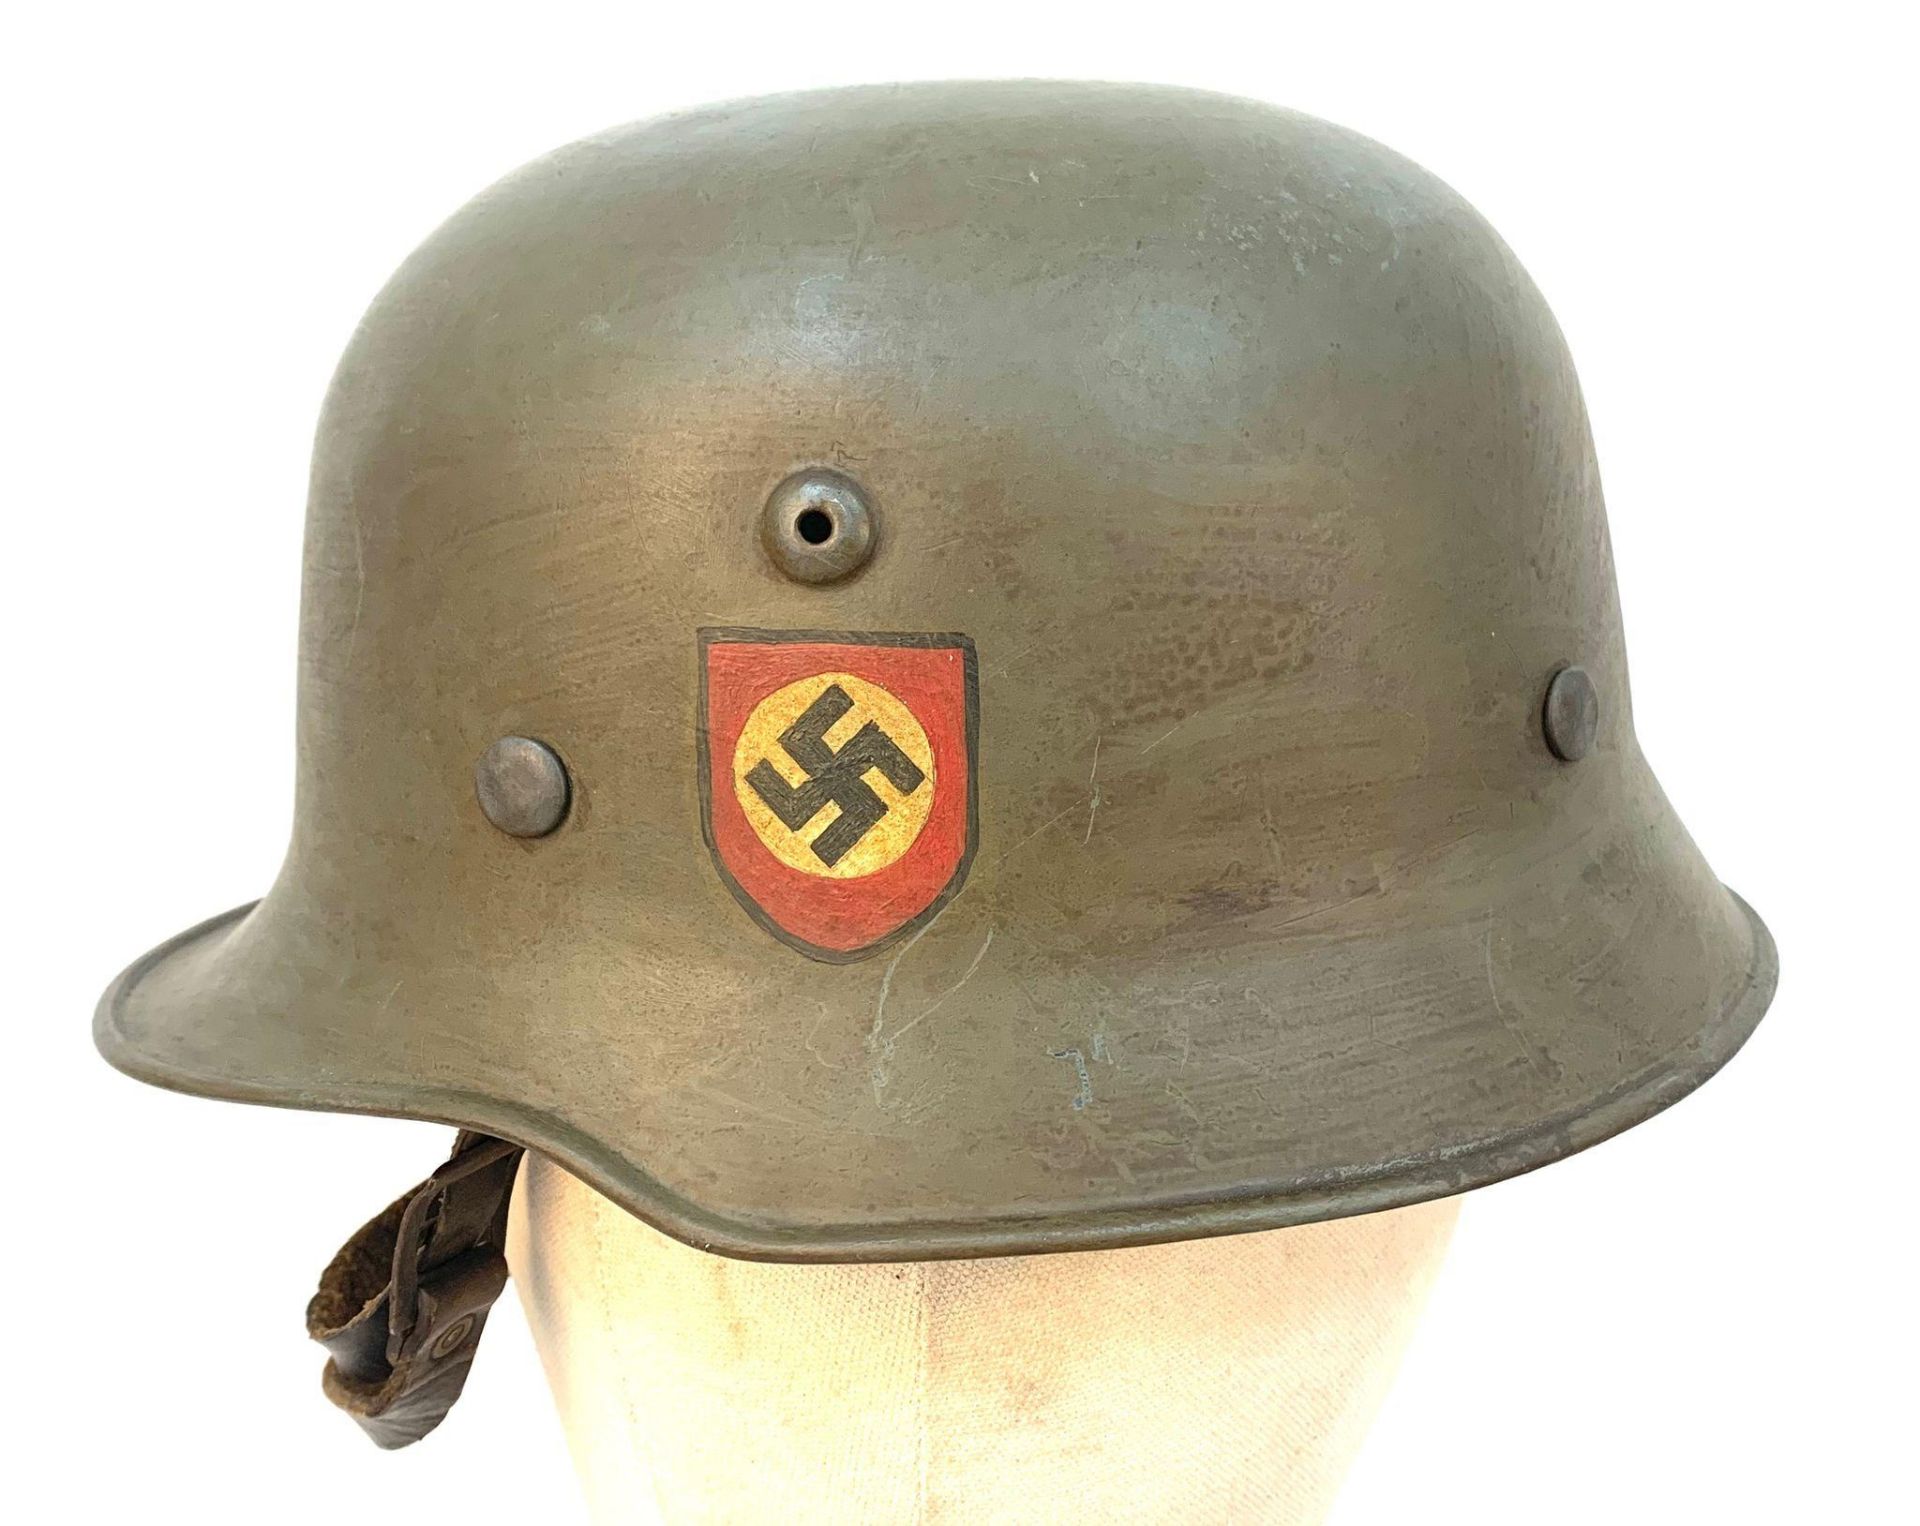 3rd Reich Waffen SS M34 Edelshalk Helmet with hand painted decals. - Bild 3 aus 5